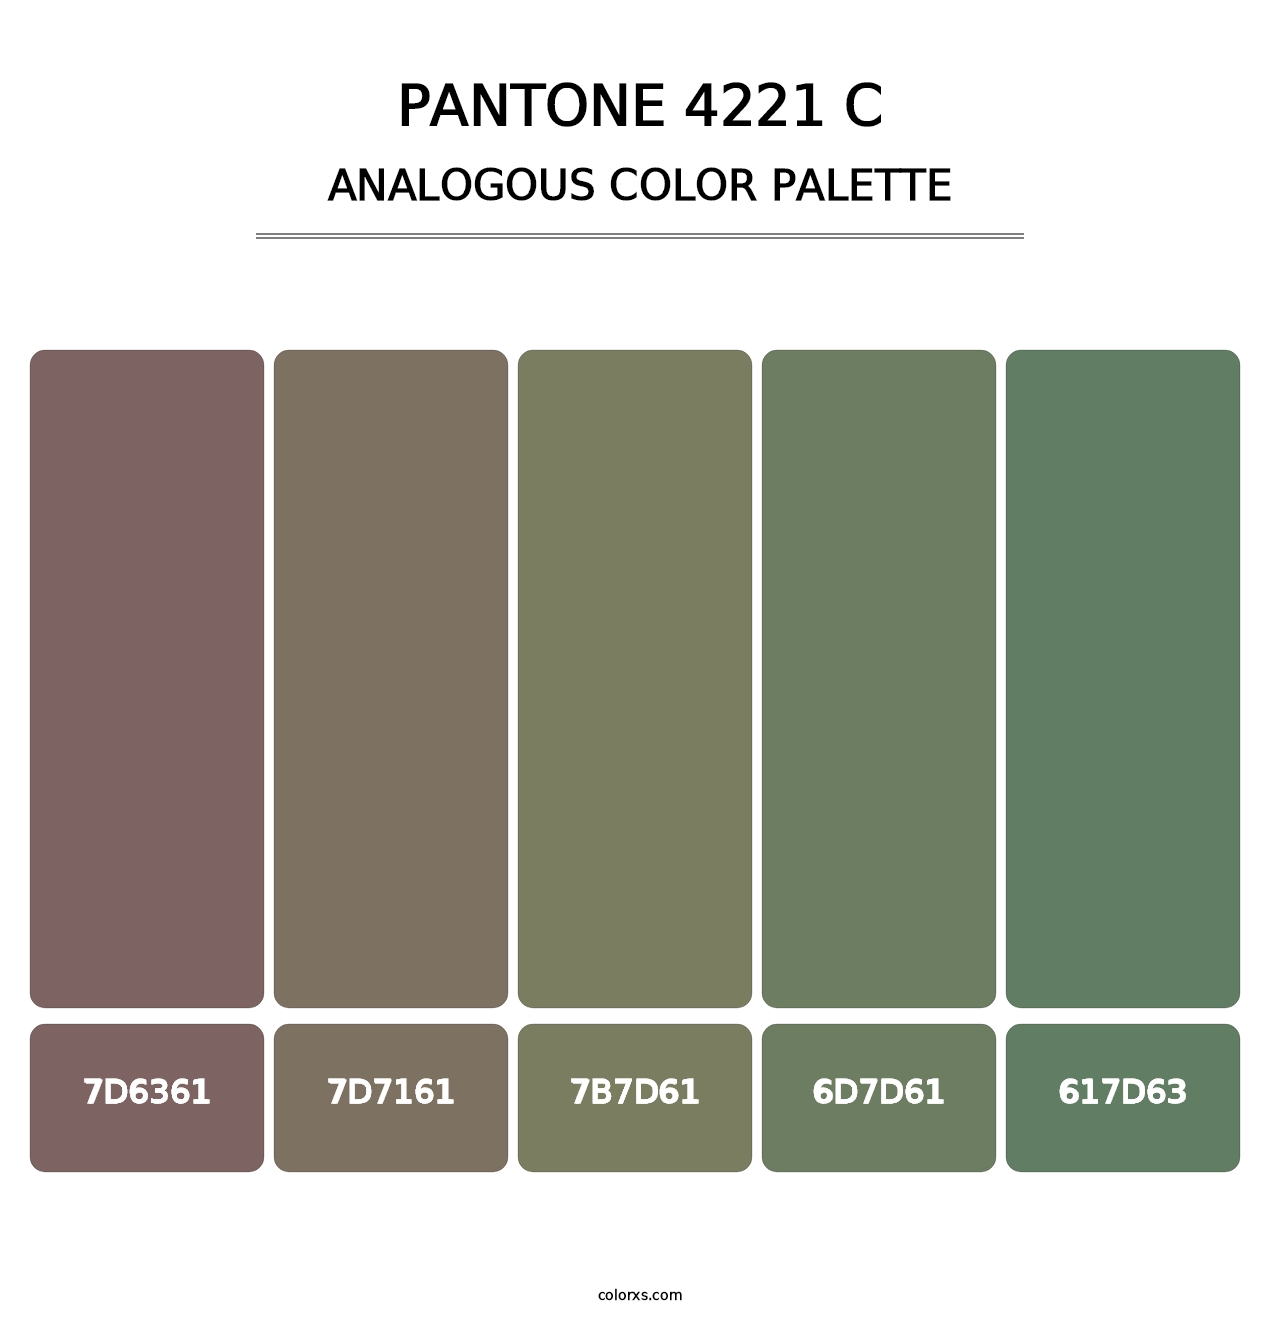 PANTONE 4221 C - Analogous Color Palette